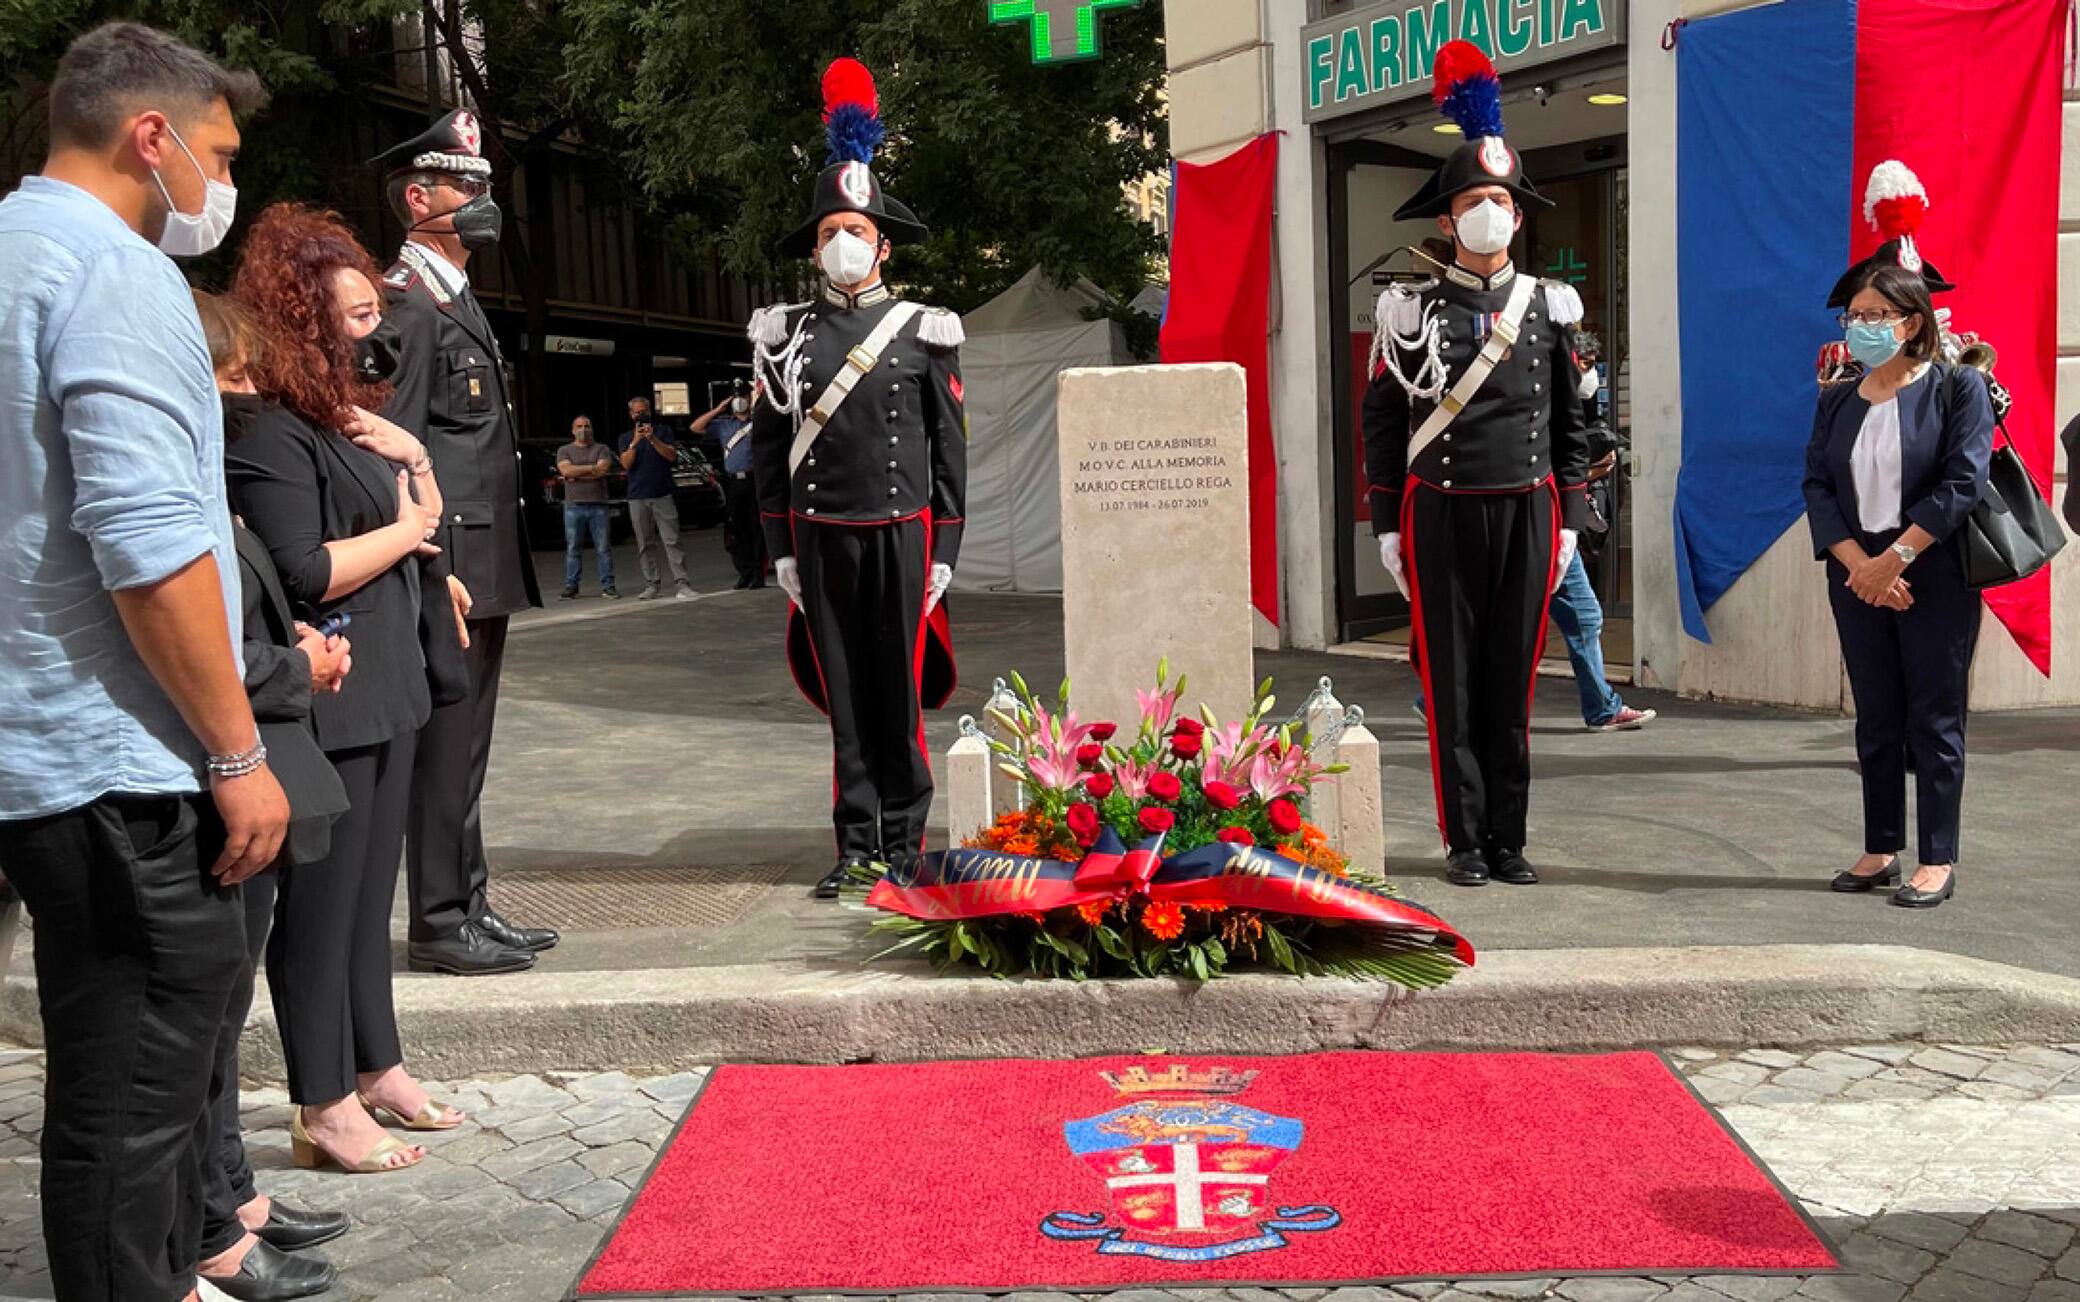 L'inaugurazione di una stele in ricordo del vicebrigadiere Mario Cerciello Rega, accoltellato a Roma nel luglio del 2019, nel giorno del suo compleanno, Roma, 13 luglio 2021. ANSA/ CARABINIERI ++HO - NO SALES EDITORIAL USE ONLY++